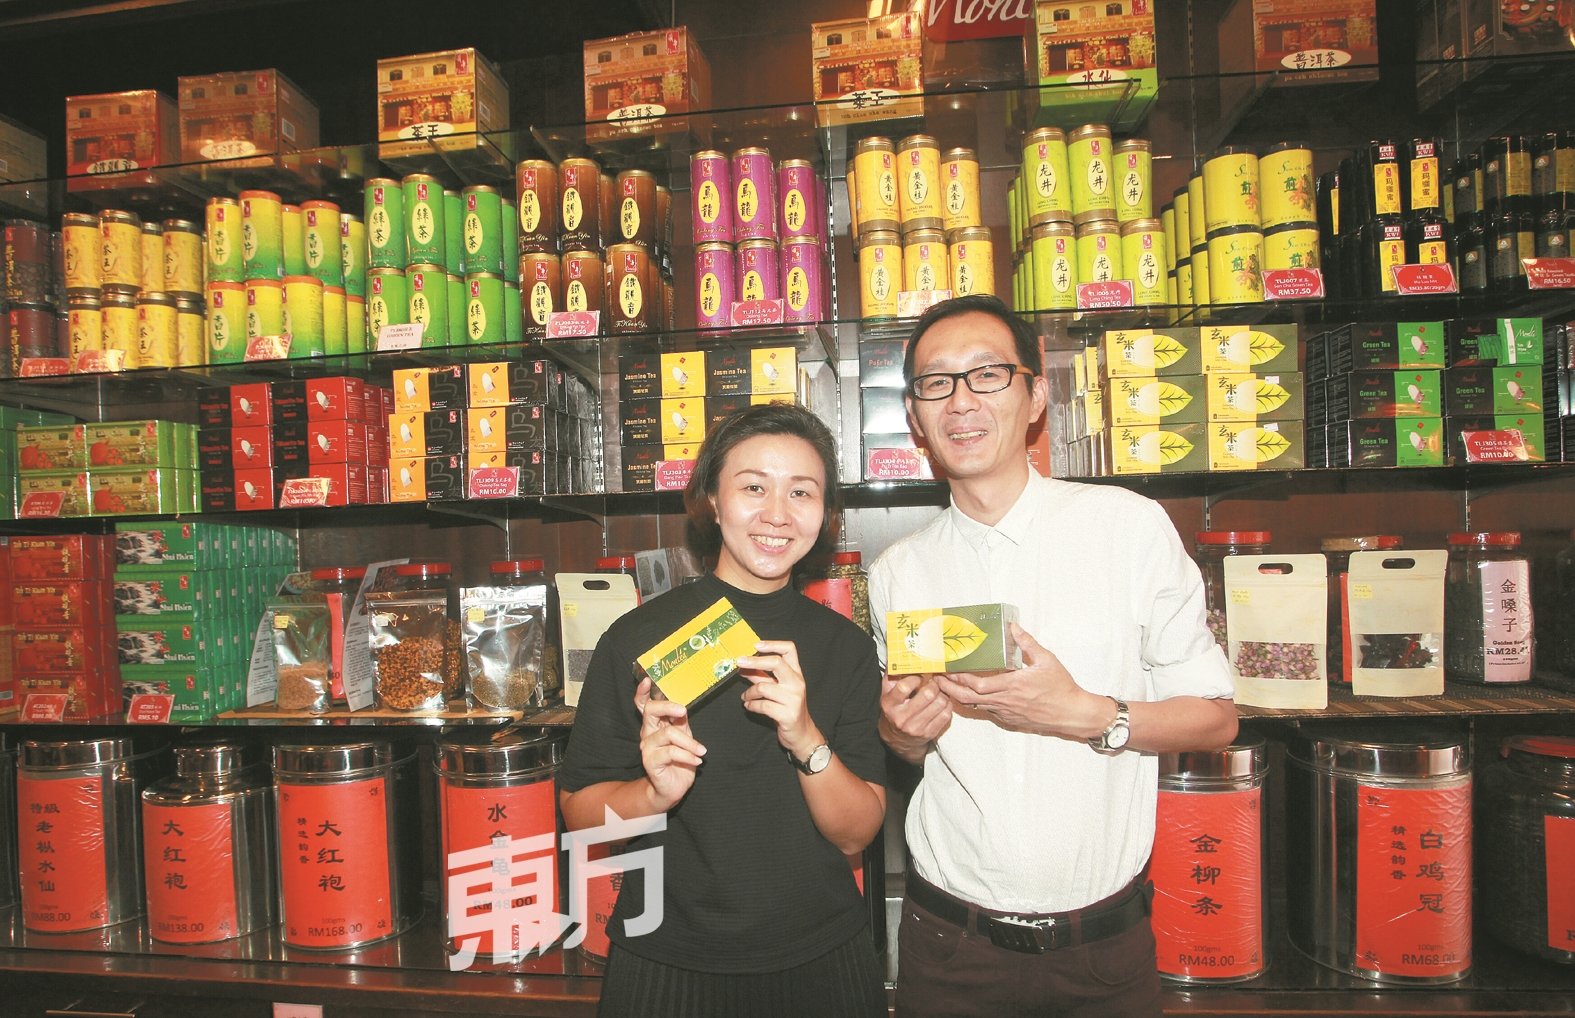 袋泡茶深受顾客喜爱，尤其是年轻人，也是年轻人品茶的“入门法”。左起为李渭娟及刘振翔。